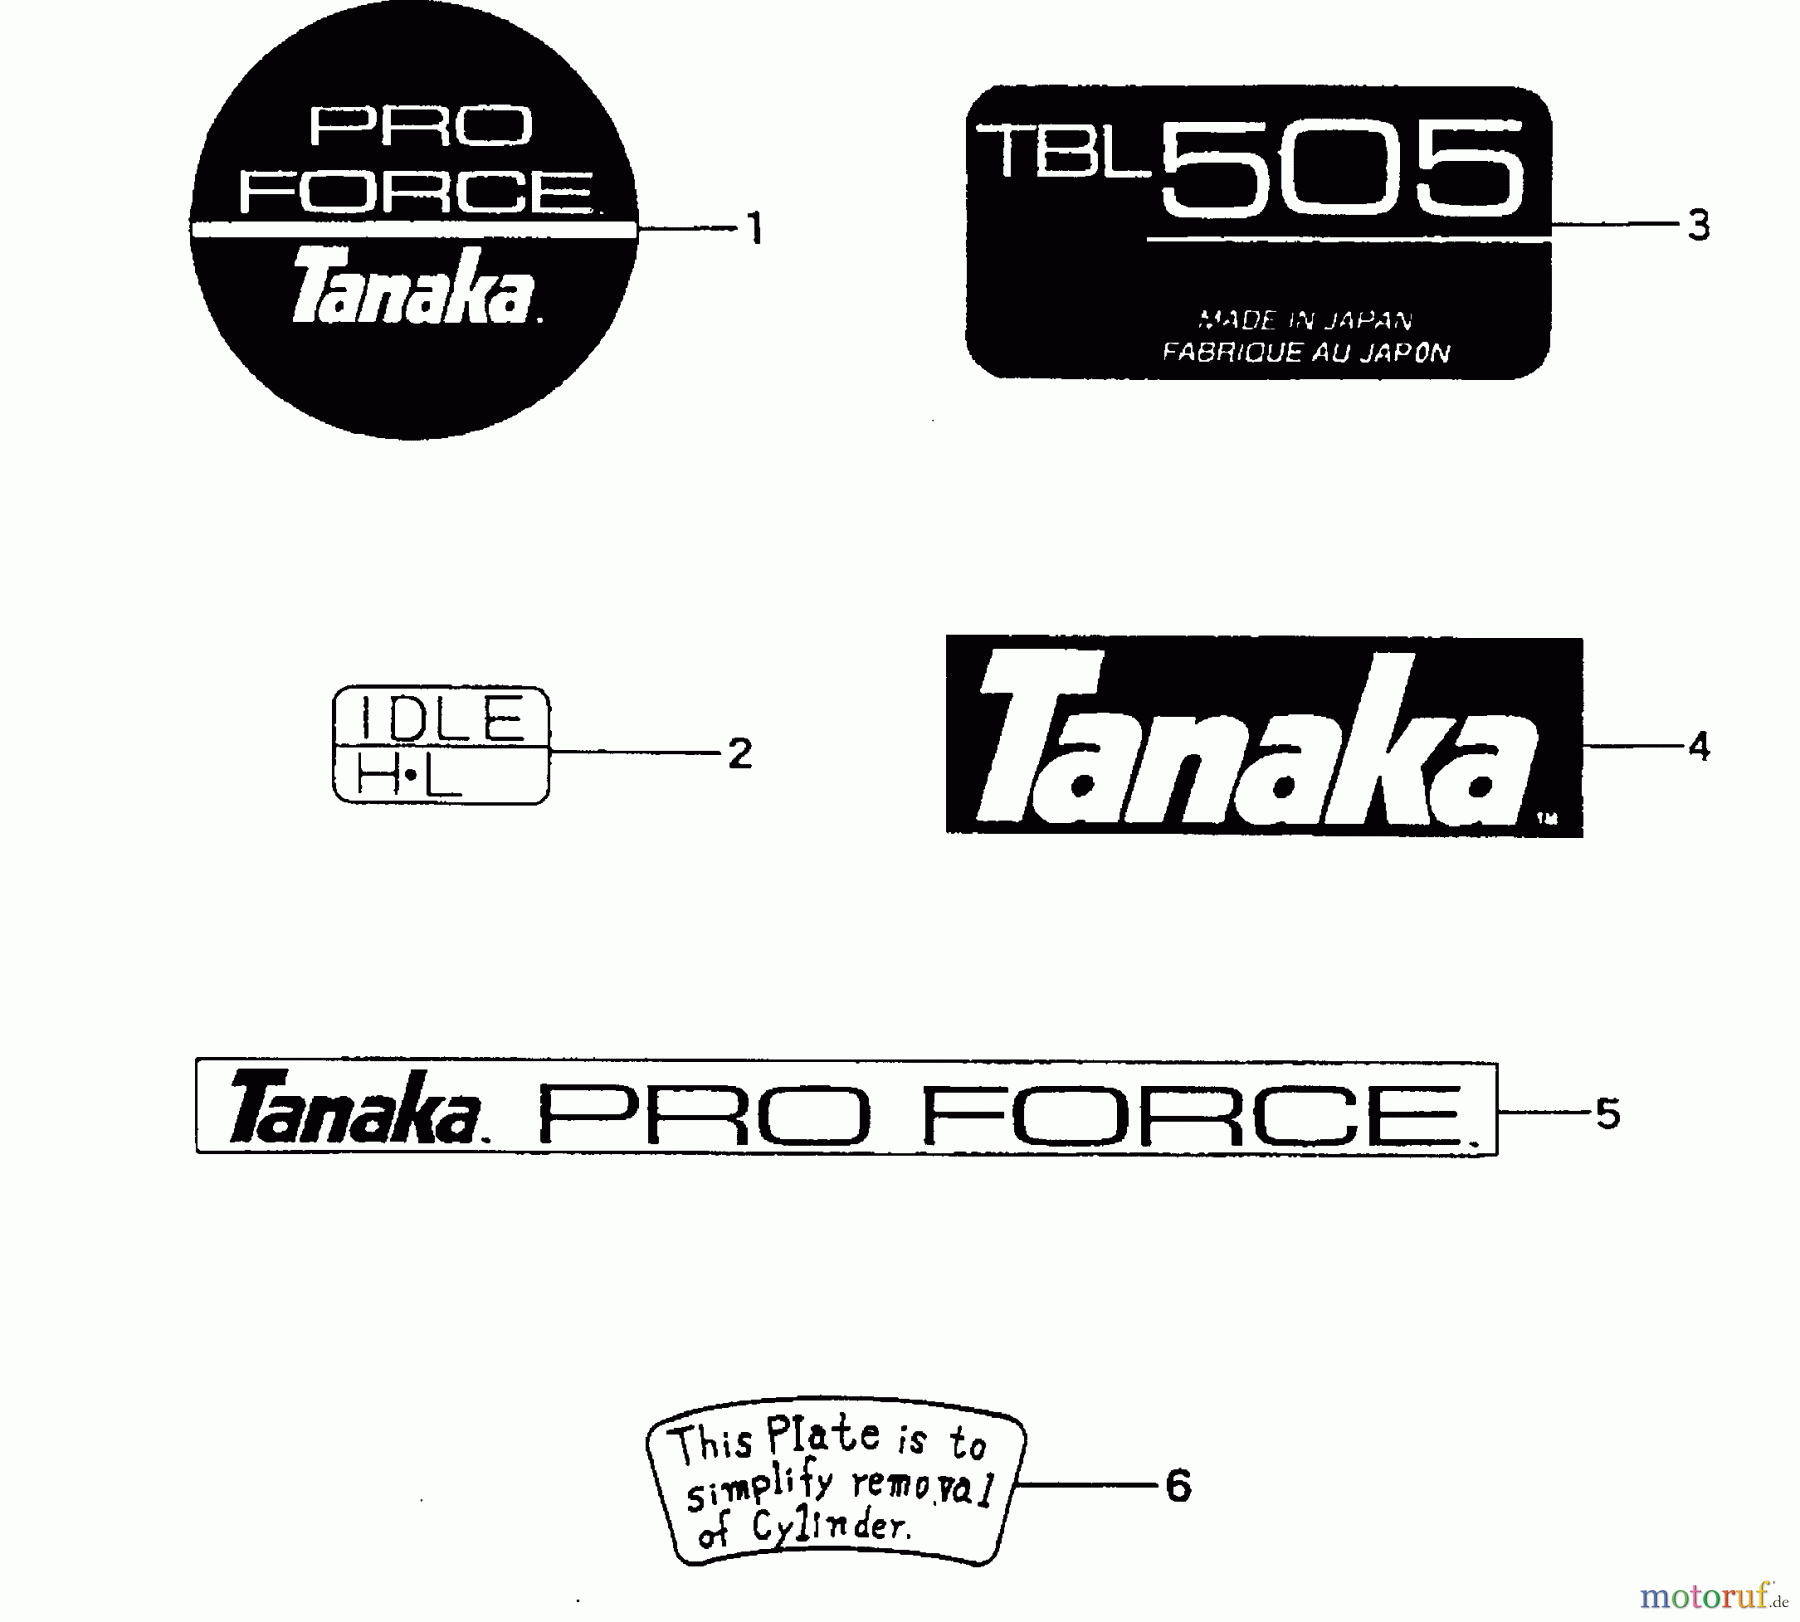  Tanaka Blasgeräte, Sauger, Häcksler, Mulchgeräte TBL-505 - Tanaka Backpack Blower Decals